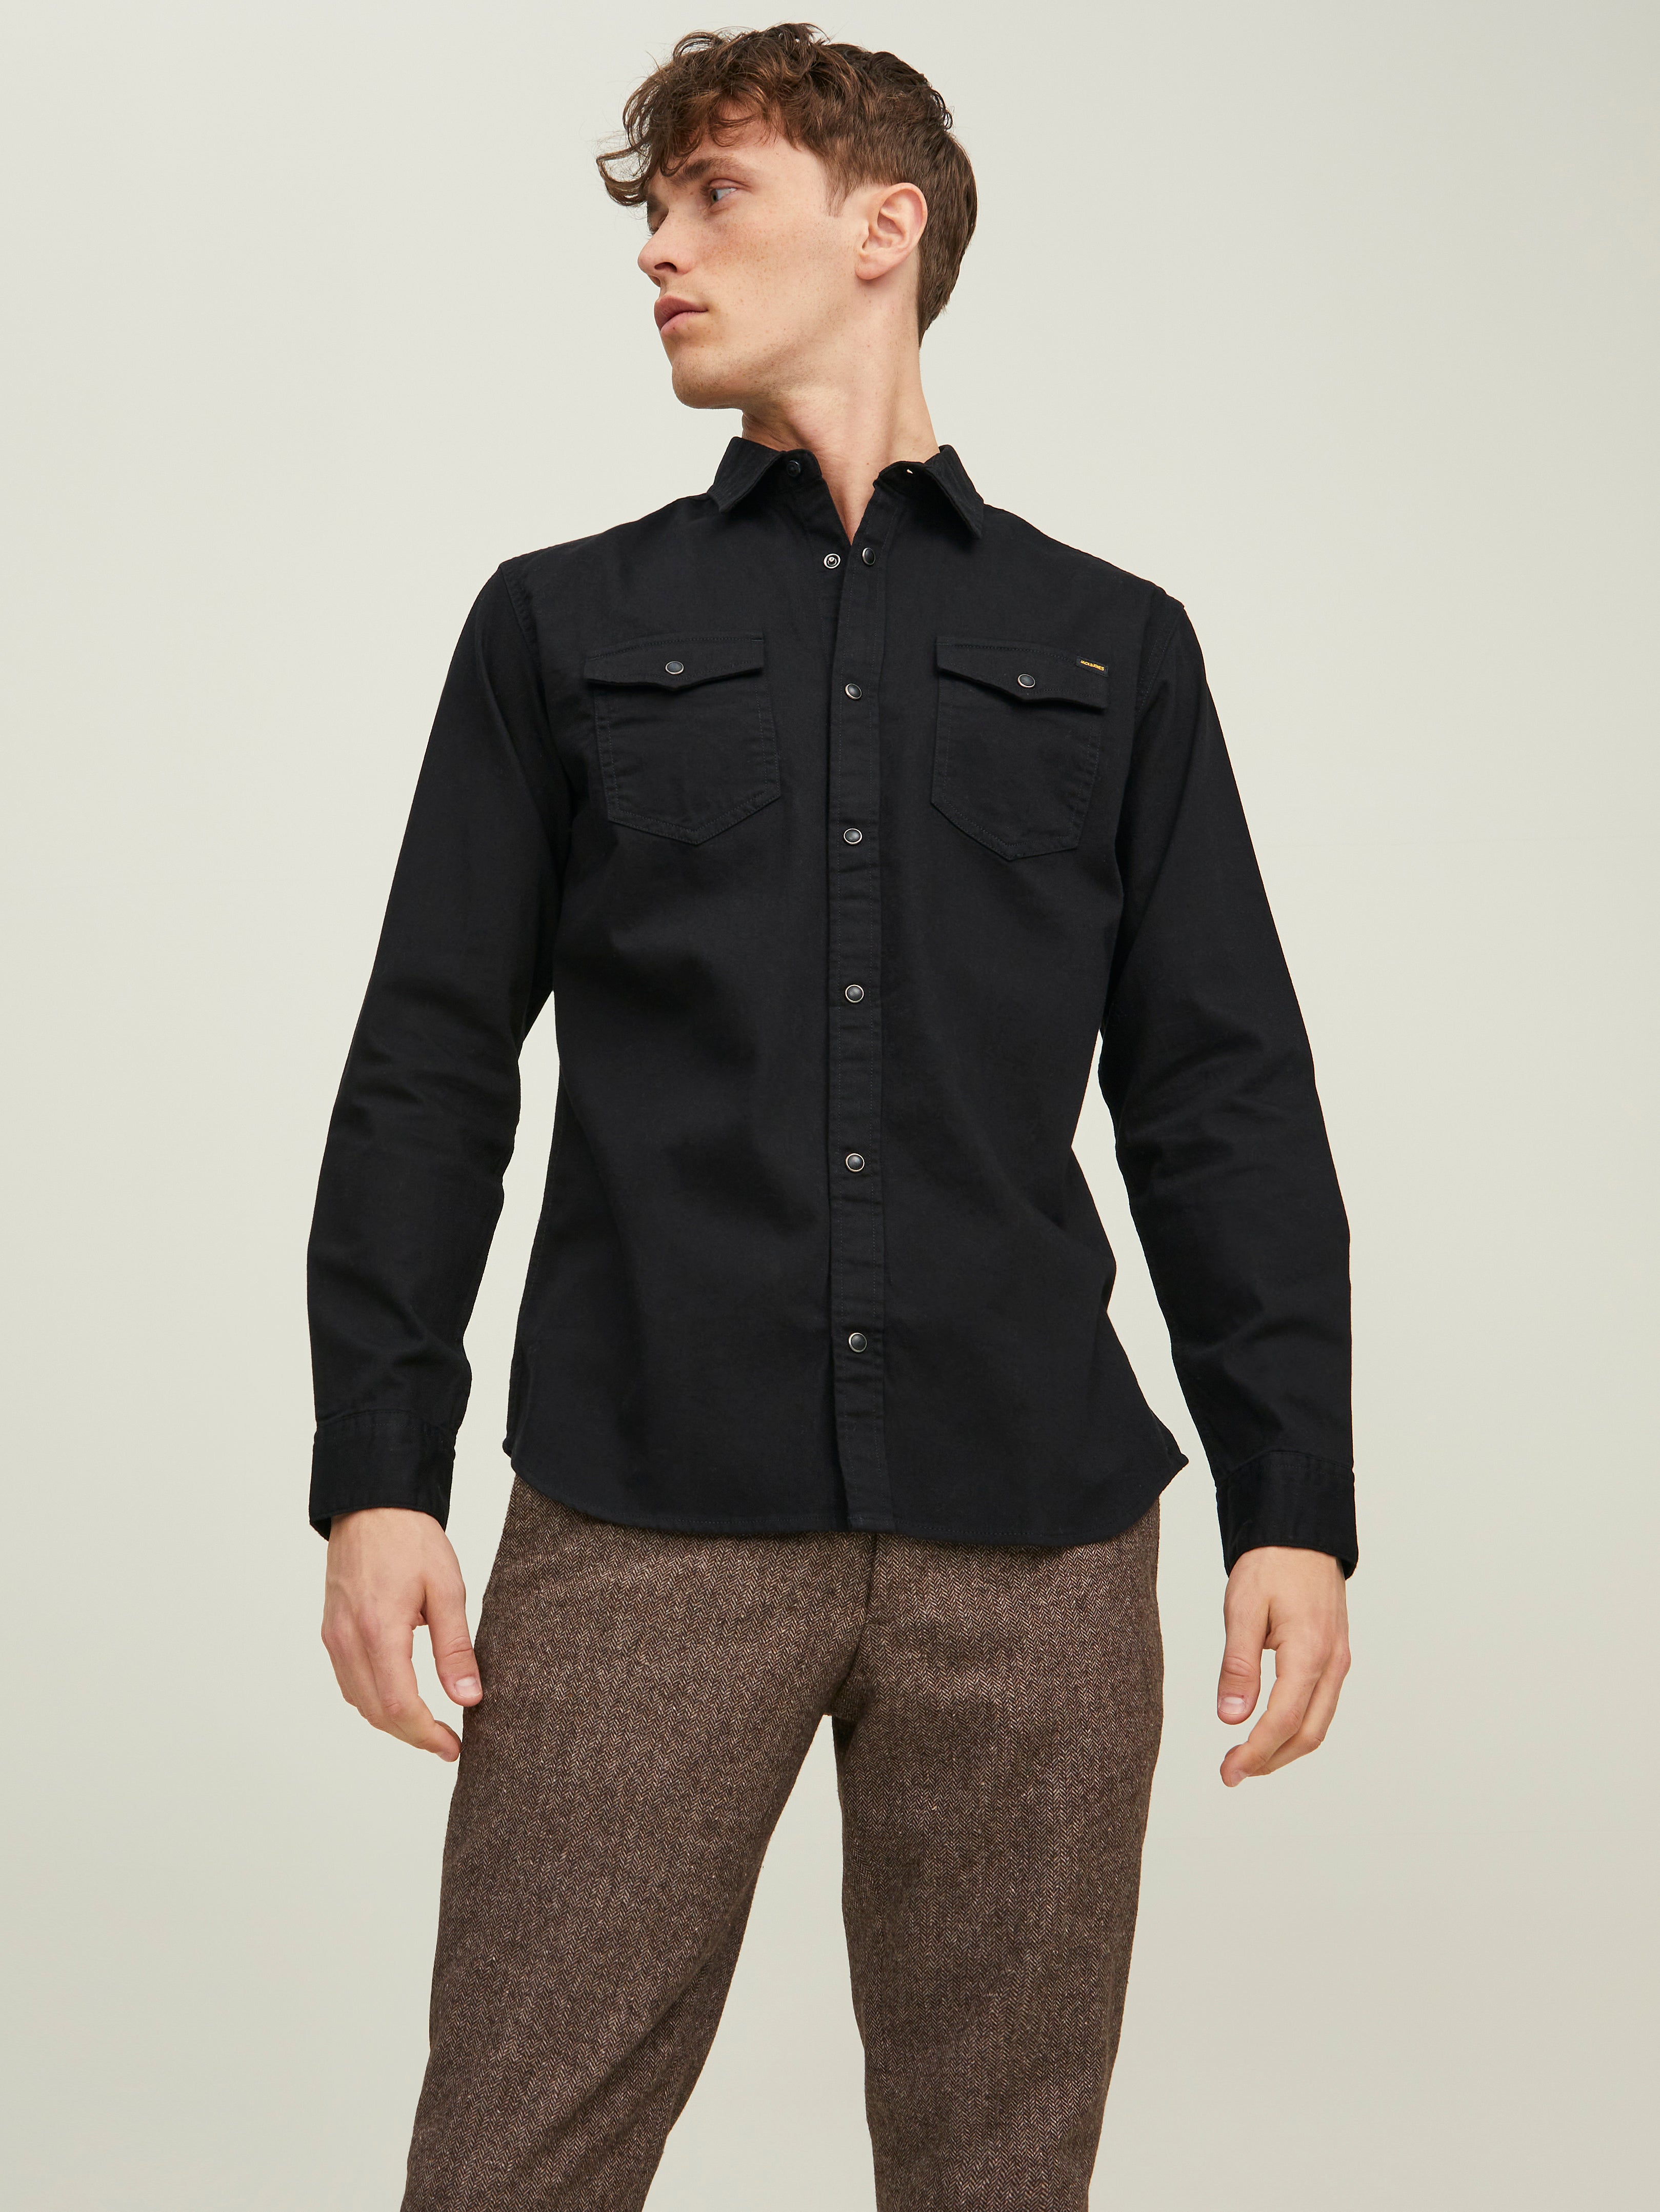 Schwarz L Rabatt 58 % HERREN Hemden & T-Shirts Casual Jack & Jones Hemd 